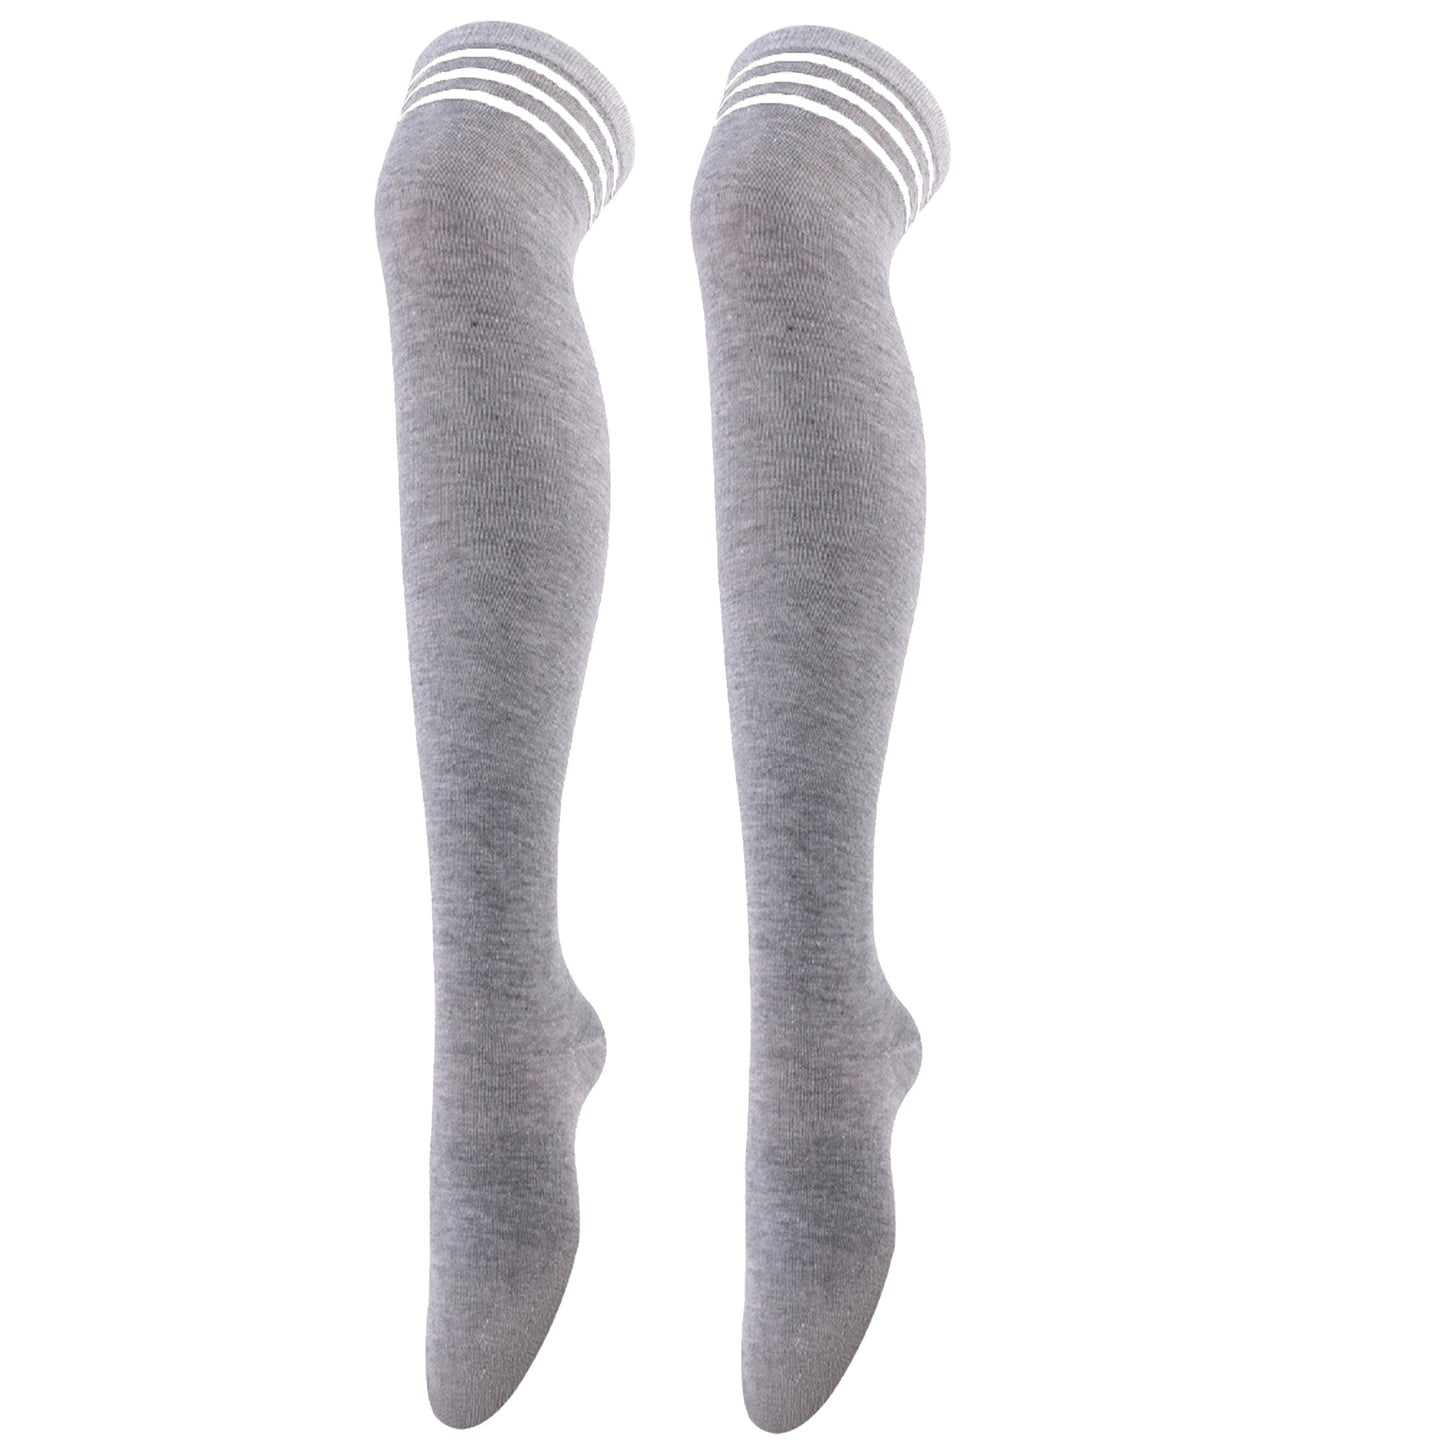 Light Gray Striped Over Knee Thigh High Long Tube Socks